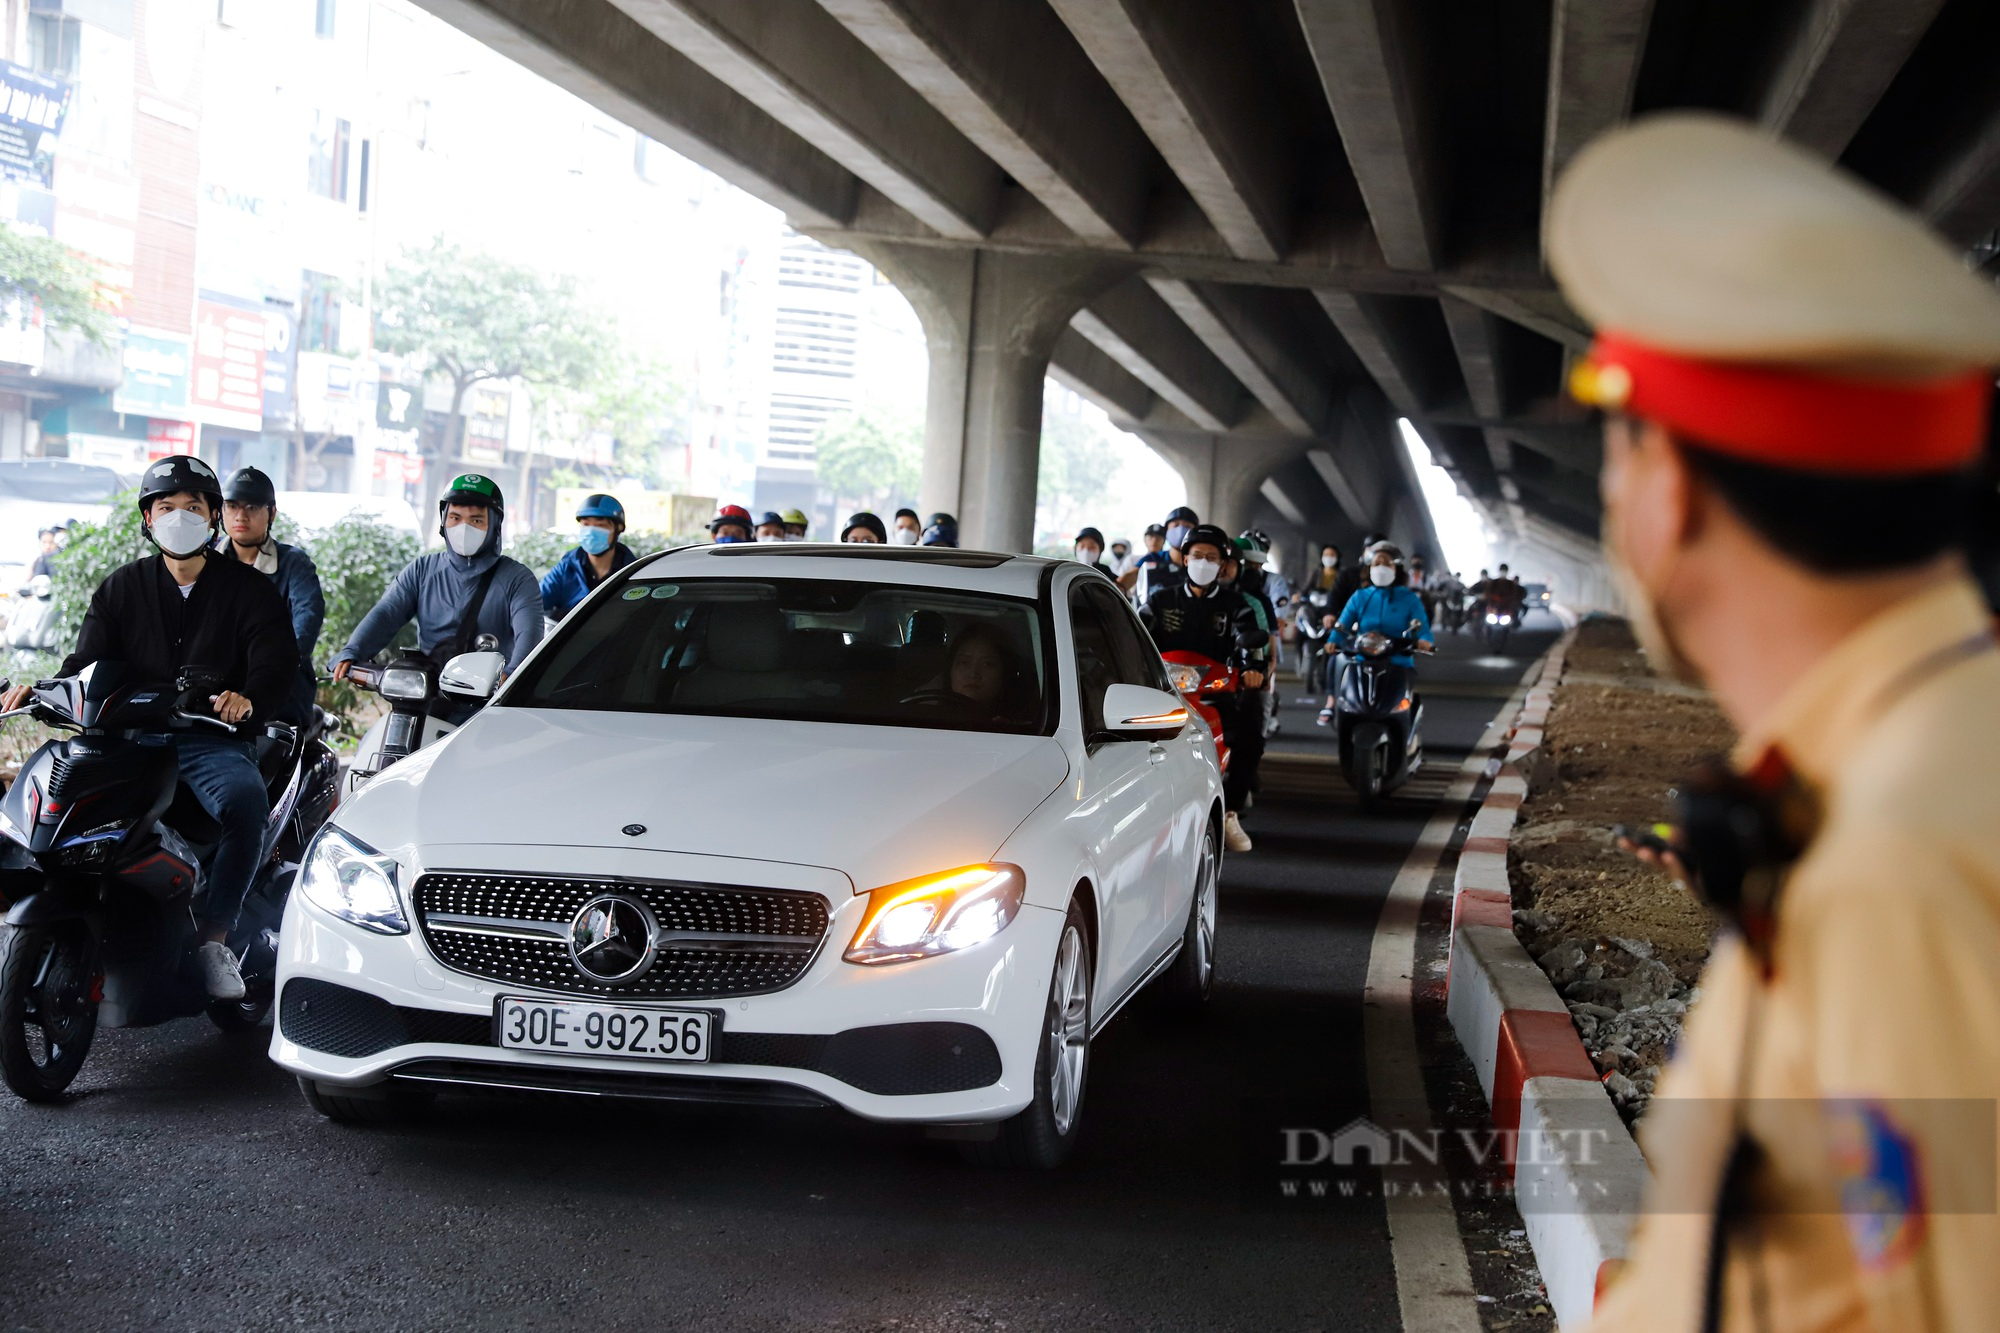 Xe máy đi ngược chiều, quay đầu bỏ chạy khi thấy chốt CSGT tại đường Nguyễn Xiển mở rộng - Ảnh 2.